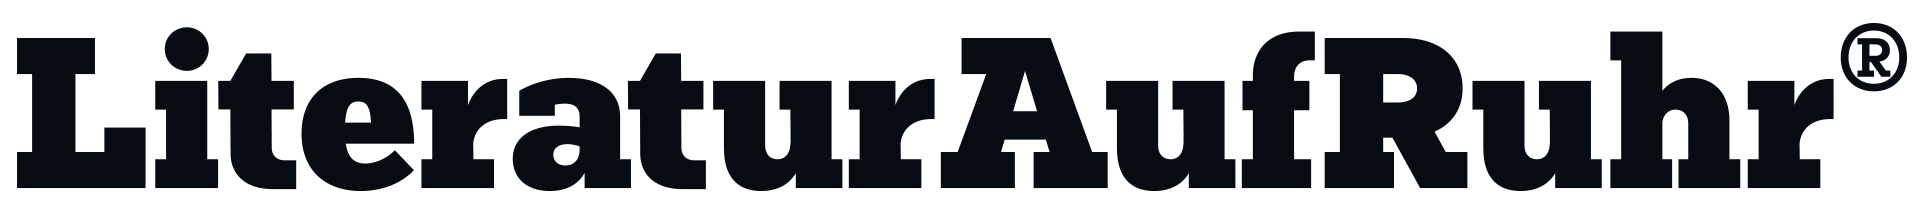 LiteraturAufRuhr® Logo